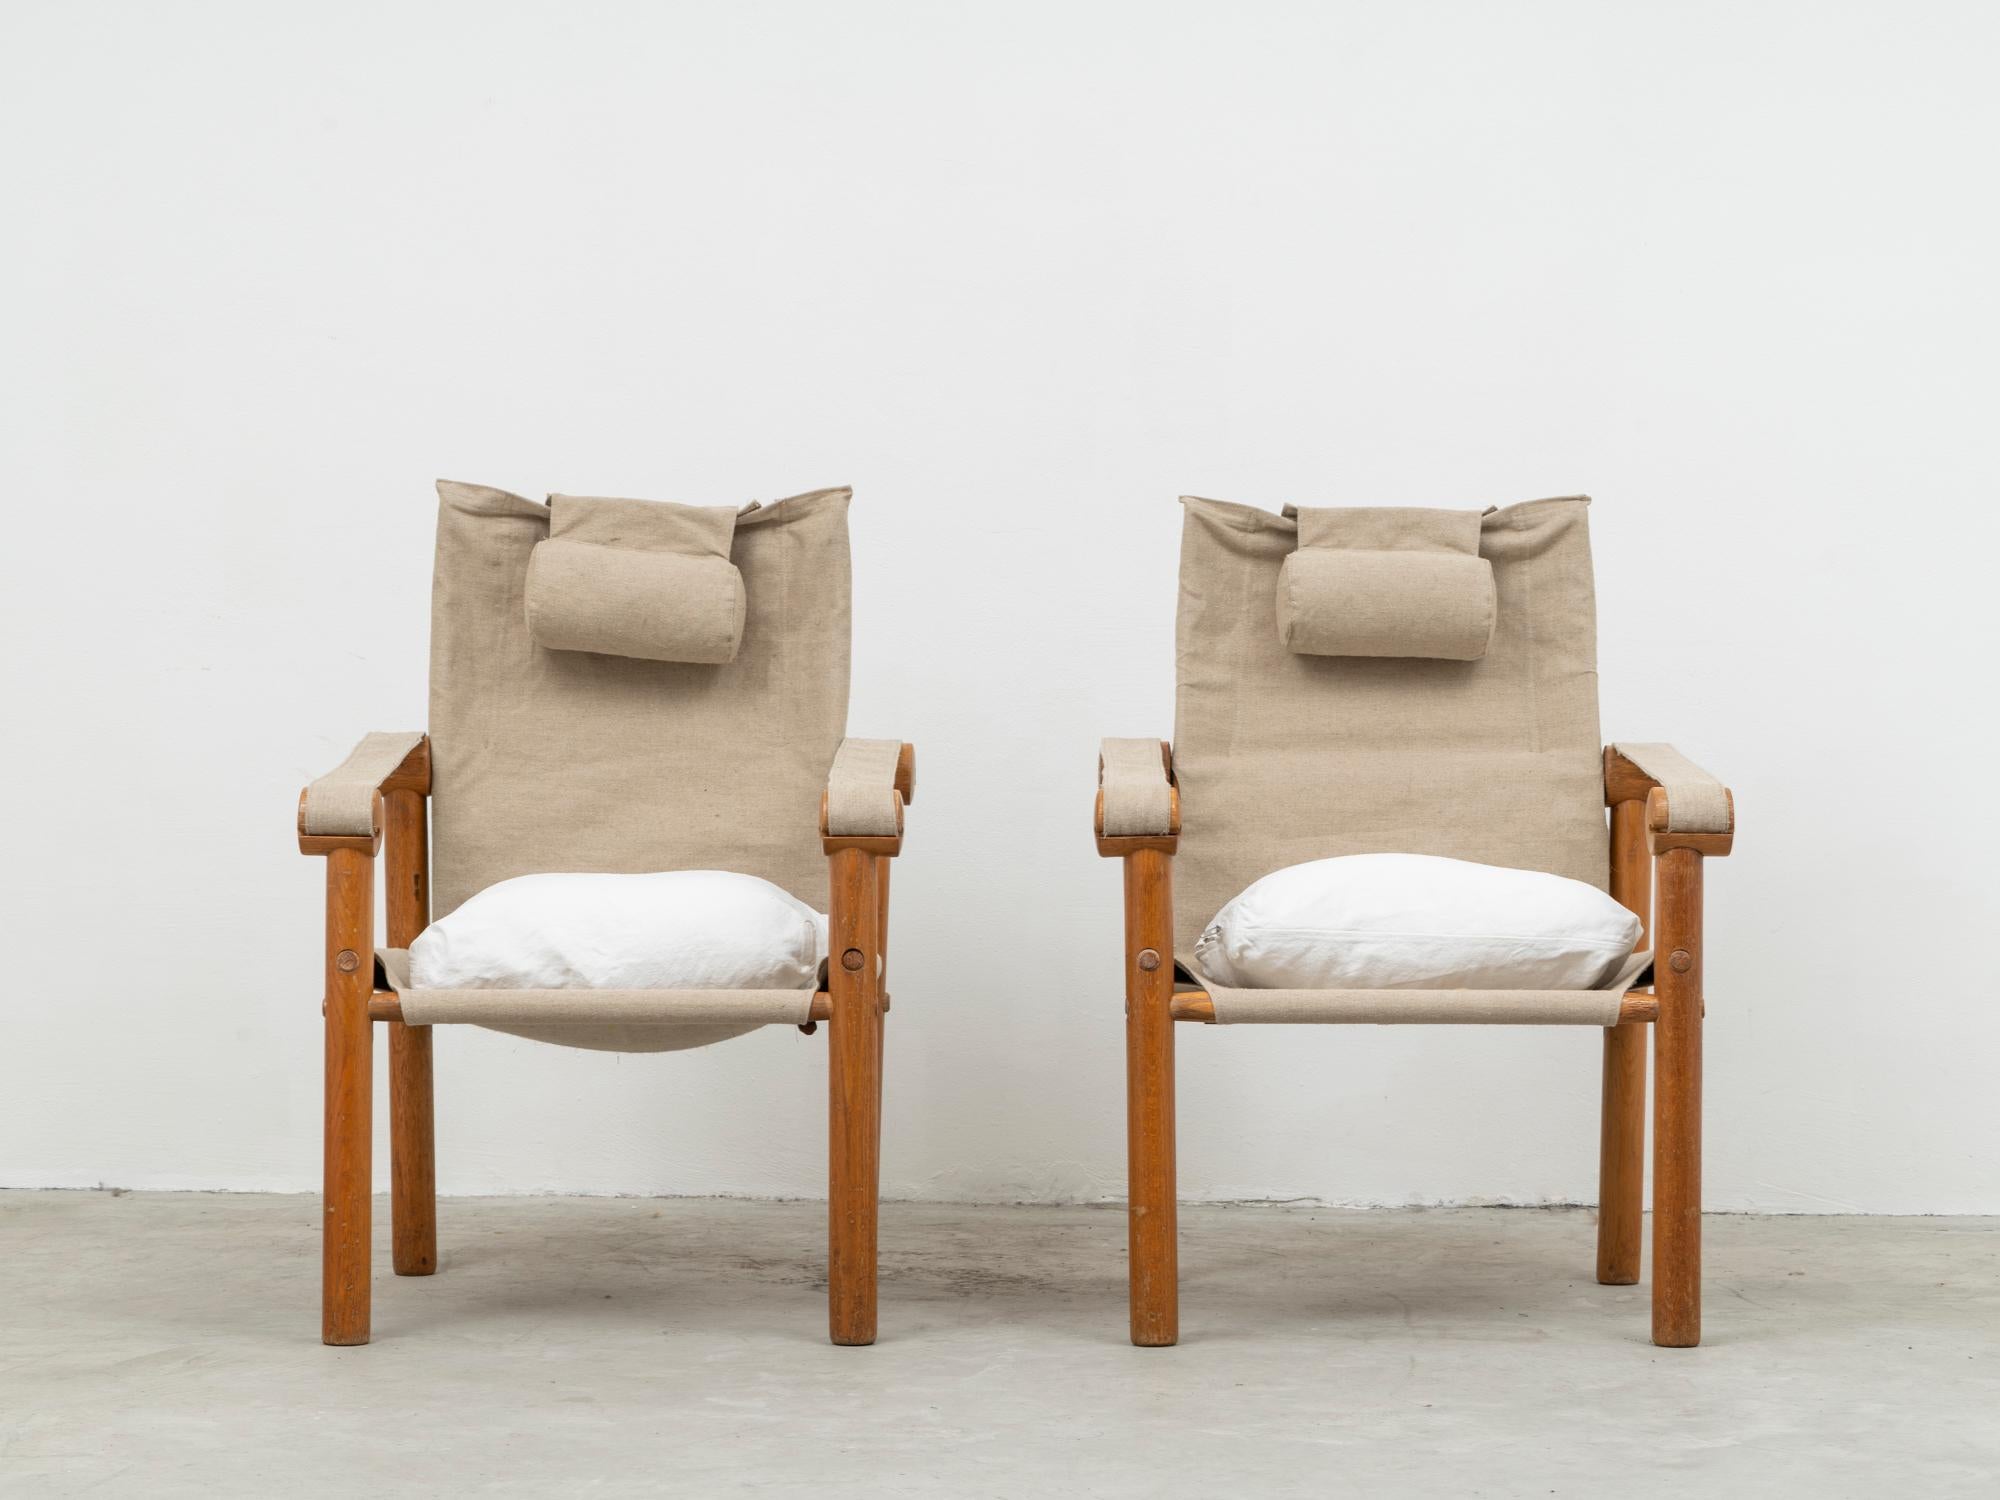 Dieses Sesselpaar ist Teil der von verschiedenen Architekten und Designern durchgeführten Untersuchung des klassischen kolonialen 